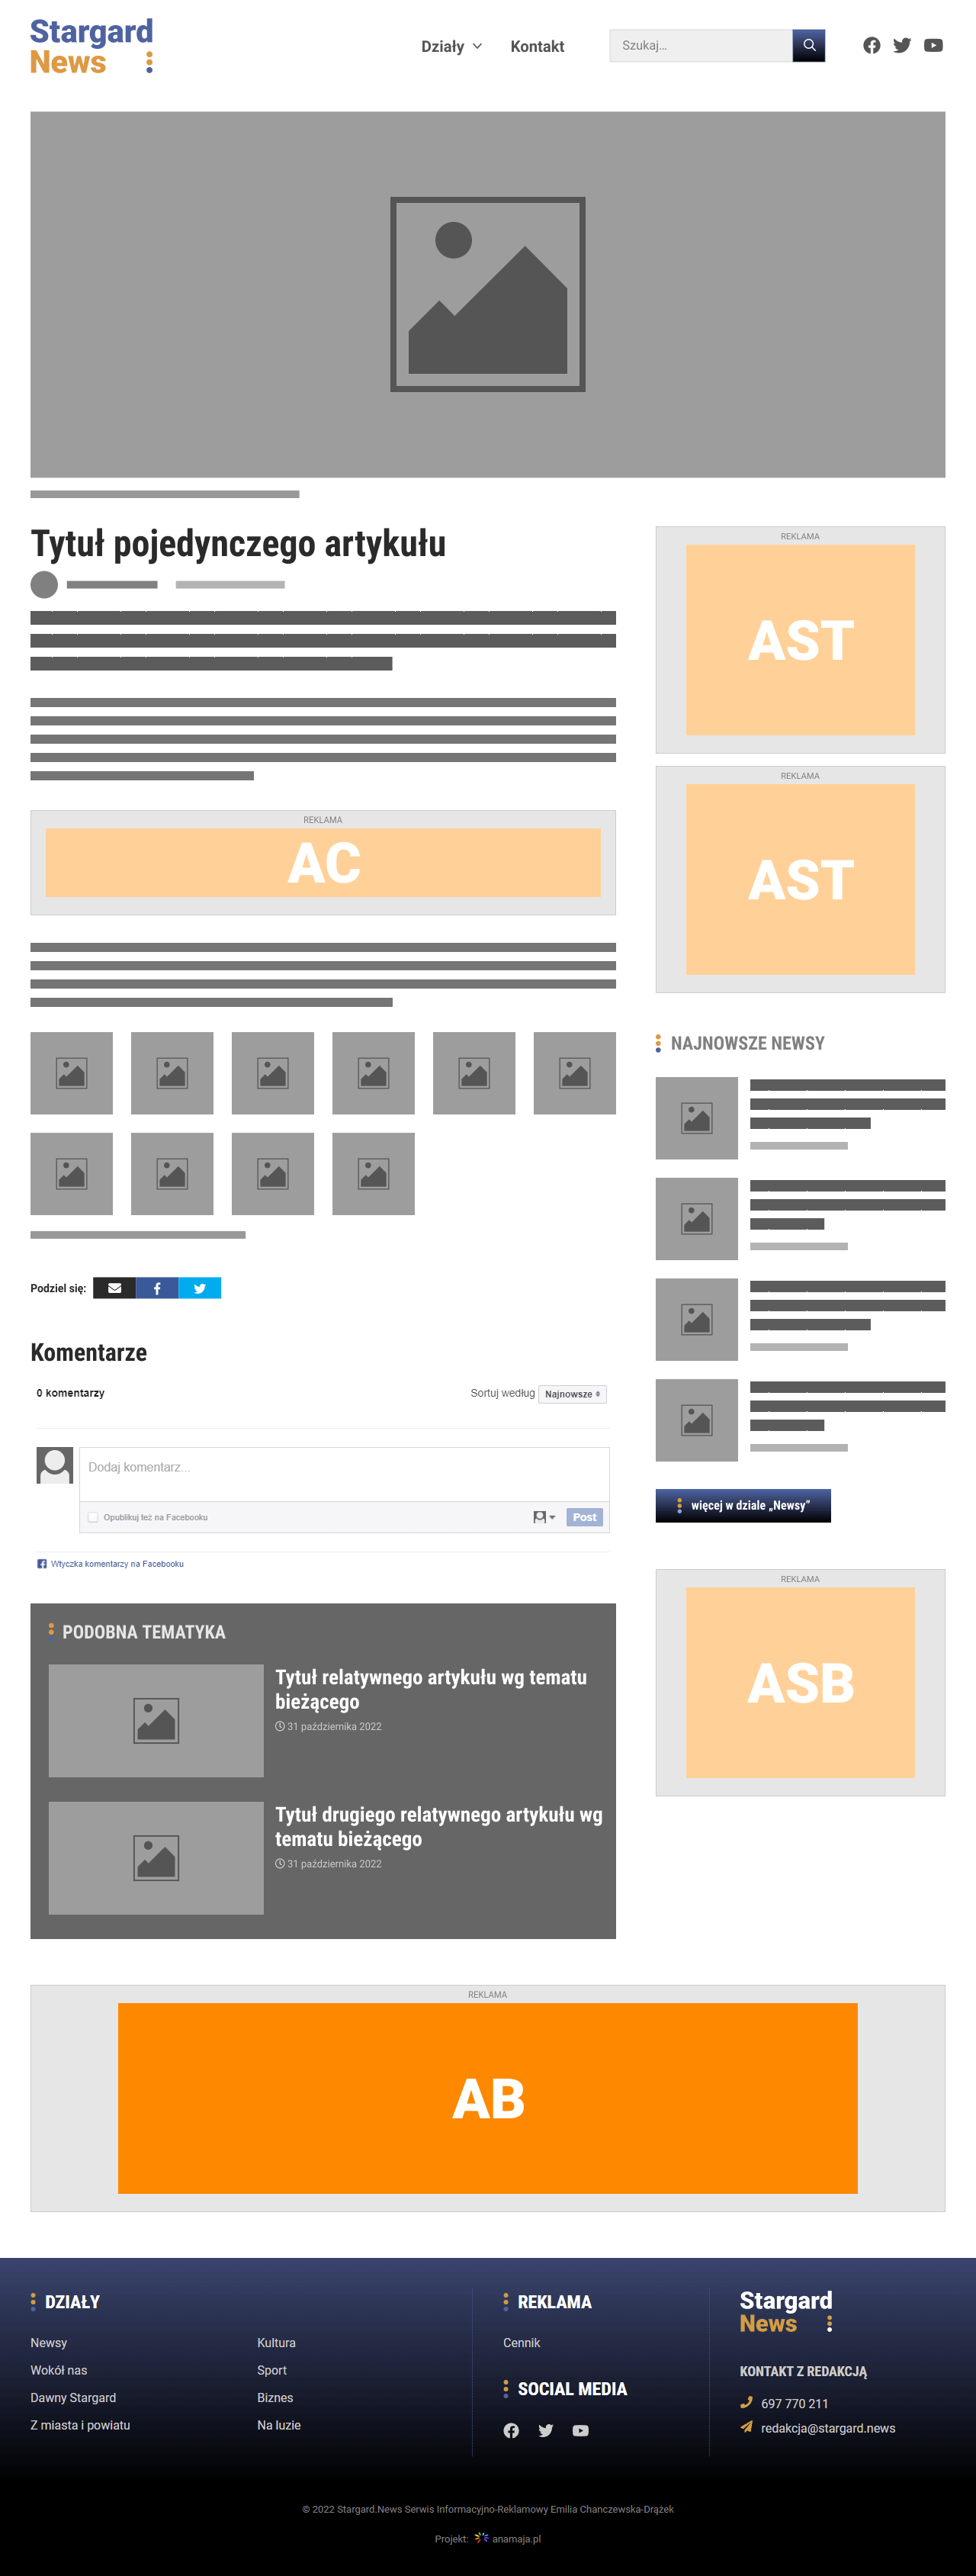 Umiejscowienie reklamy AB na desktopach